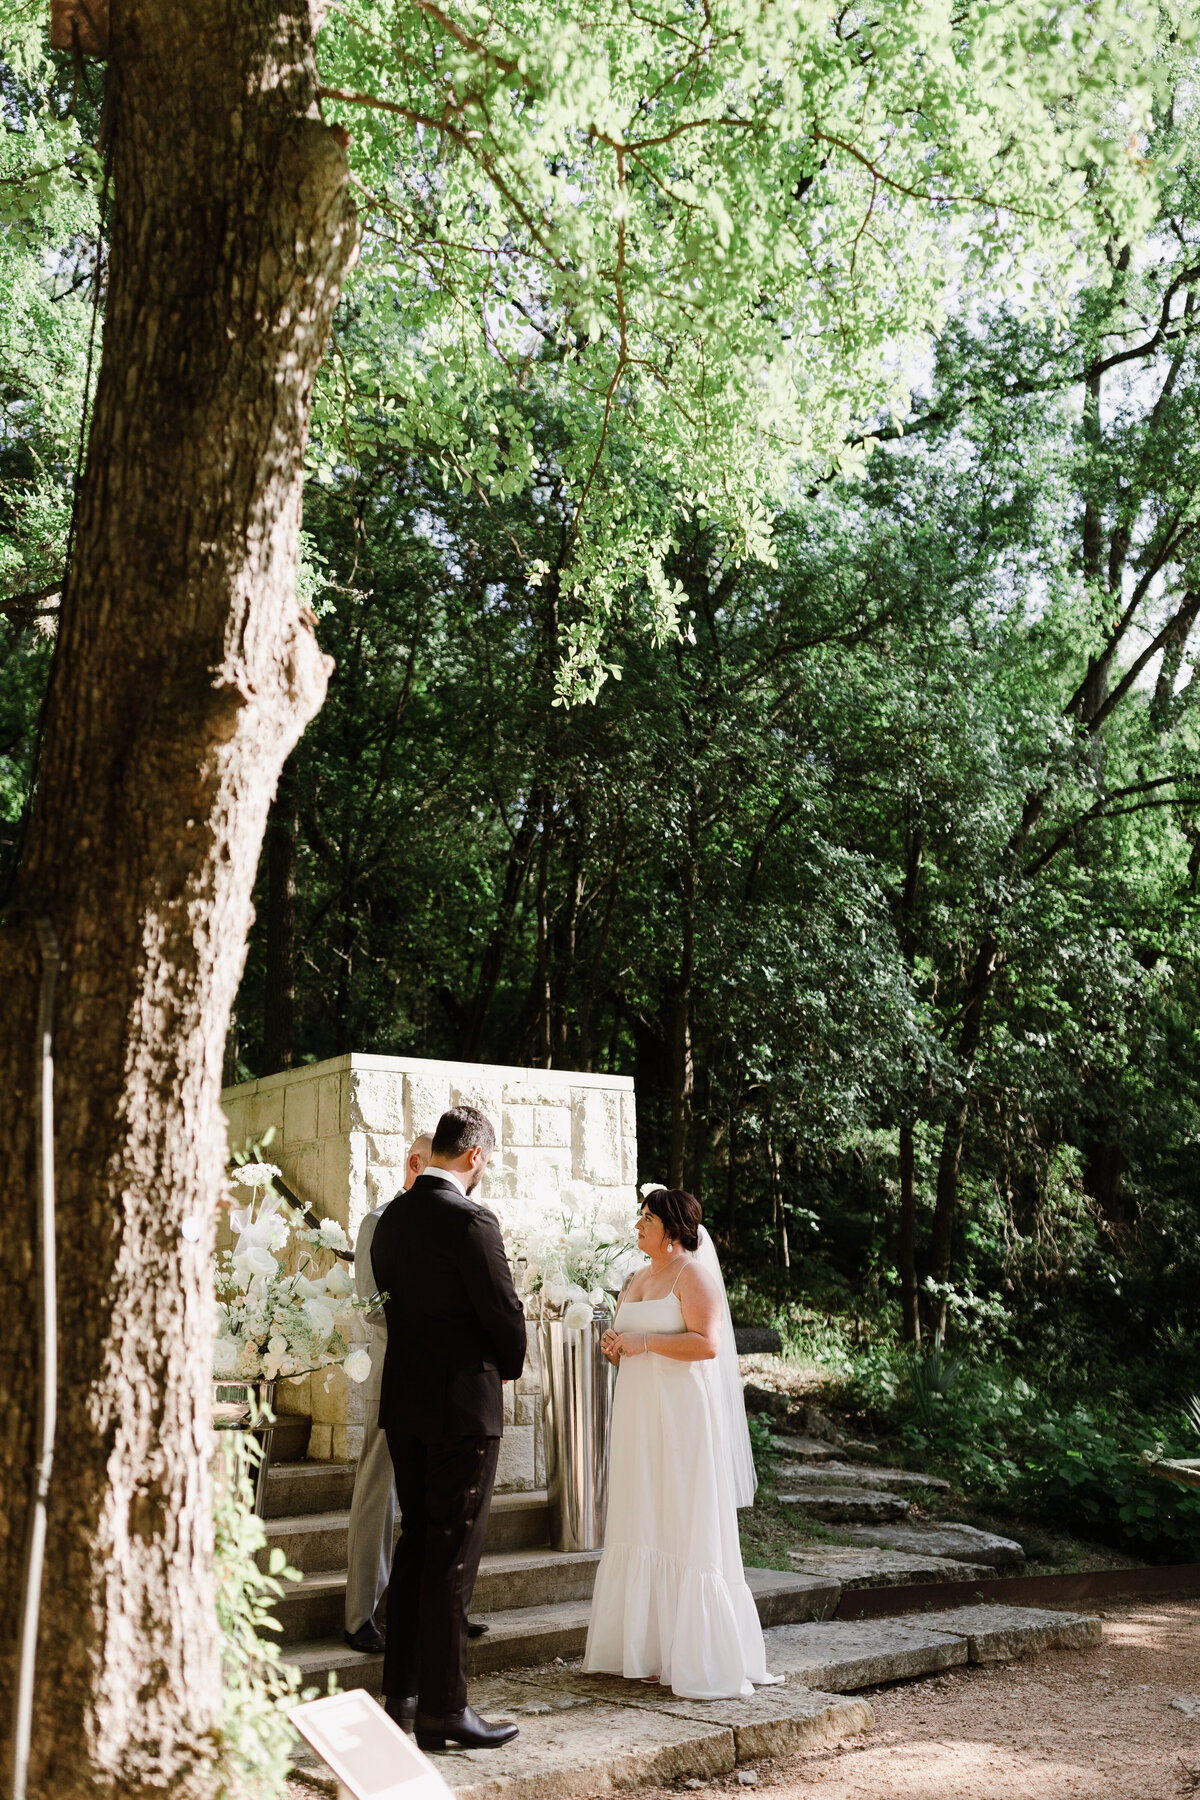 Bride and groom at outdoor wedding ceremony at Umlauf Sculpture Garden, Austin